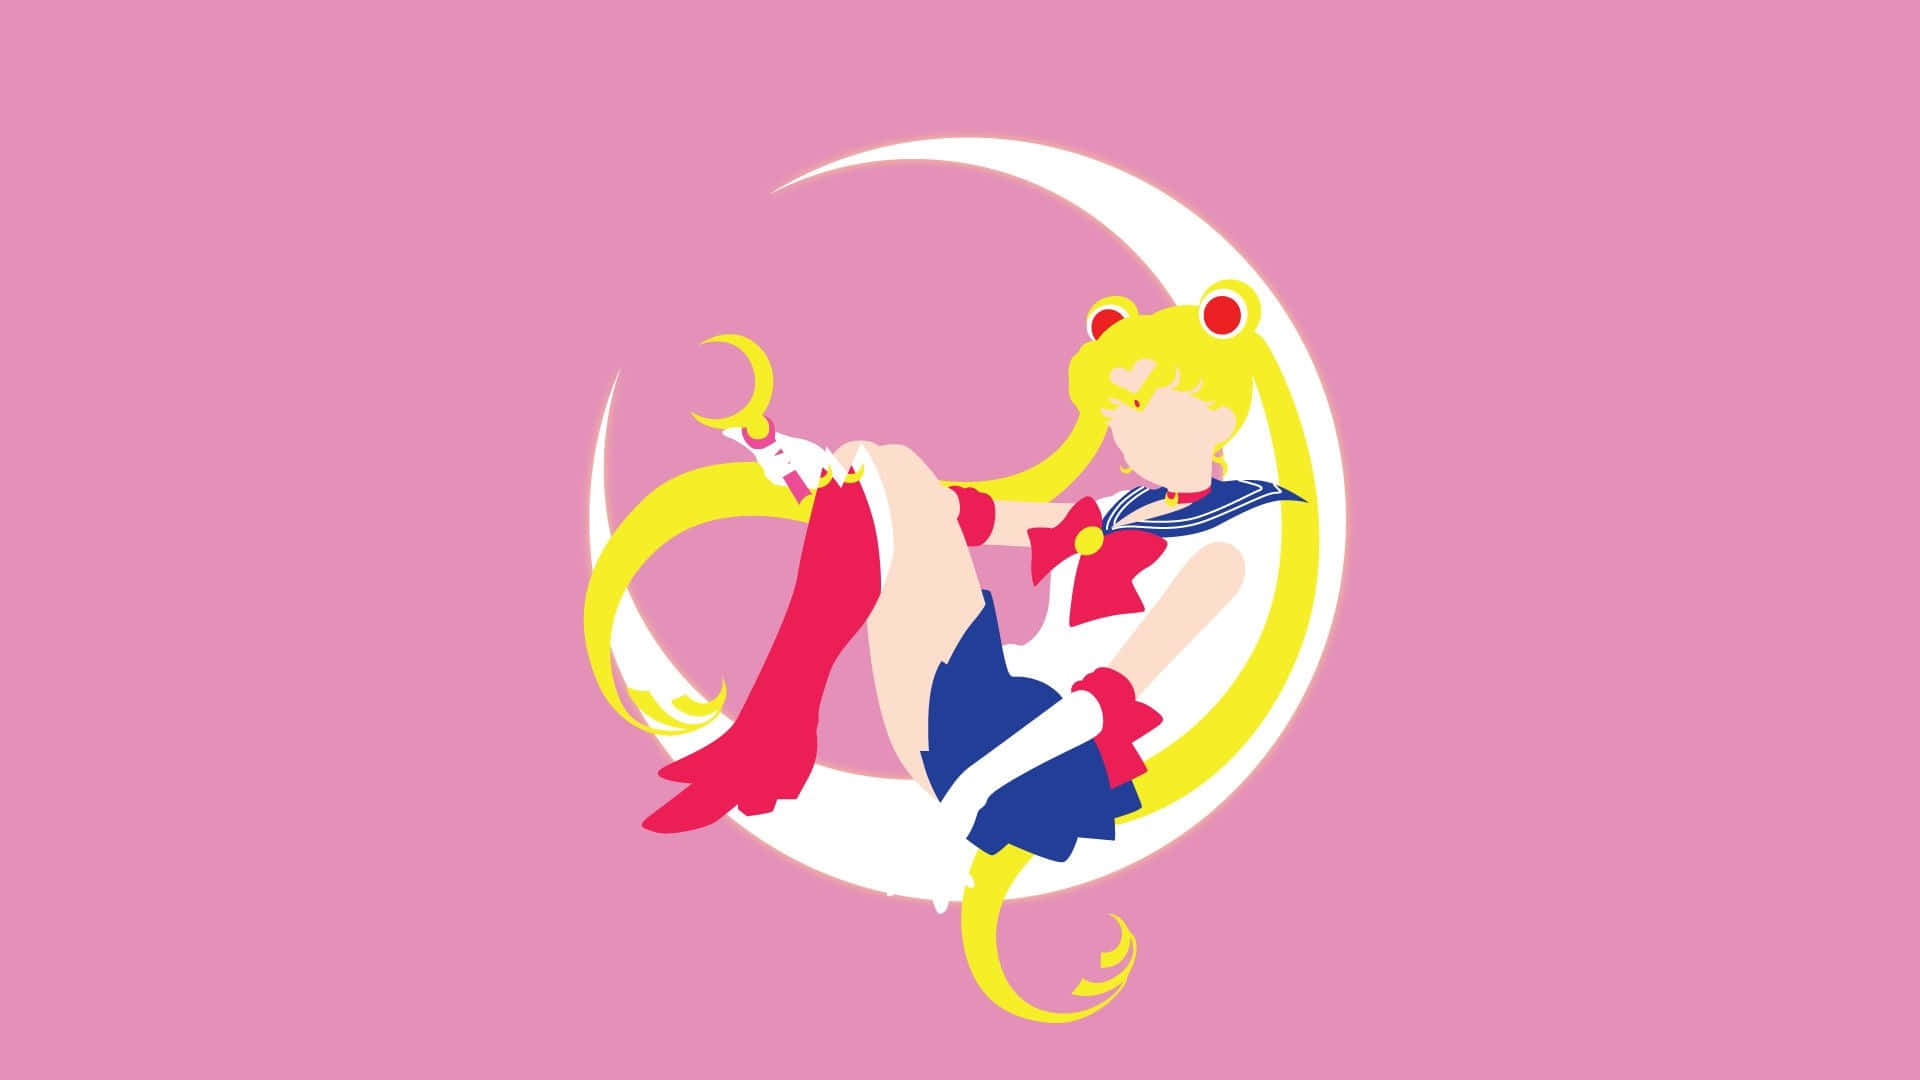 Illustrazioneartistica Di Sailor Moon In Tonalità Pastello Su Una Mezzaluna Sfondo